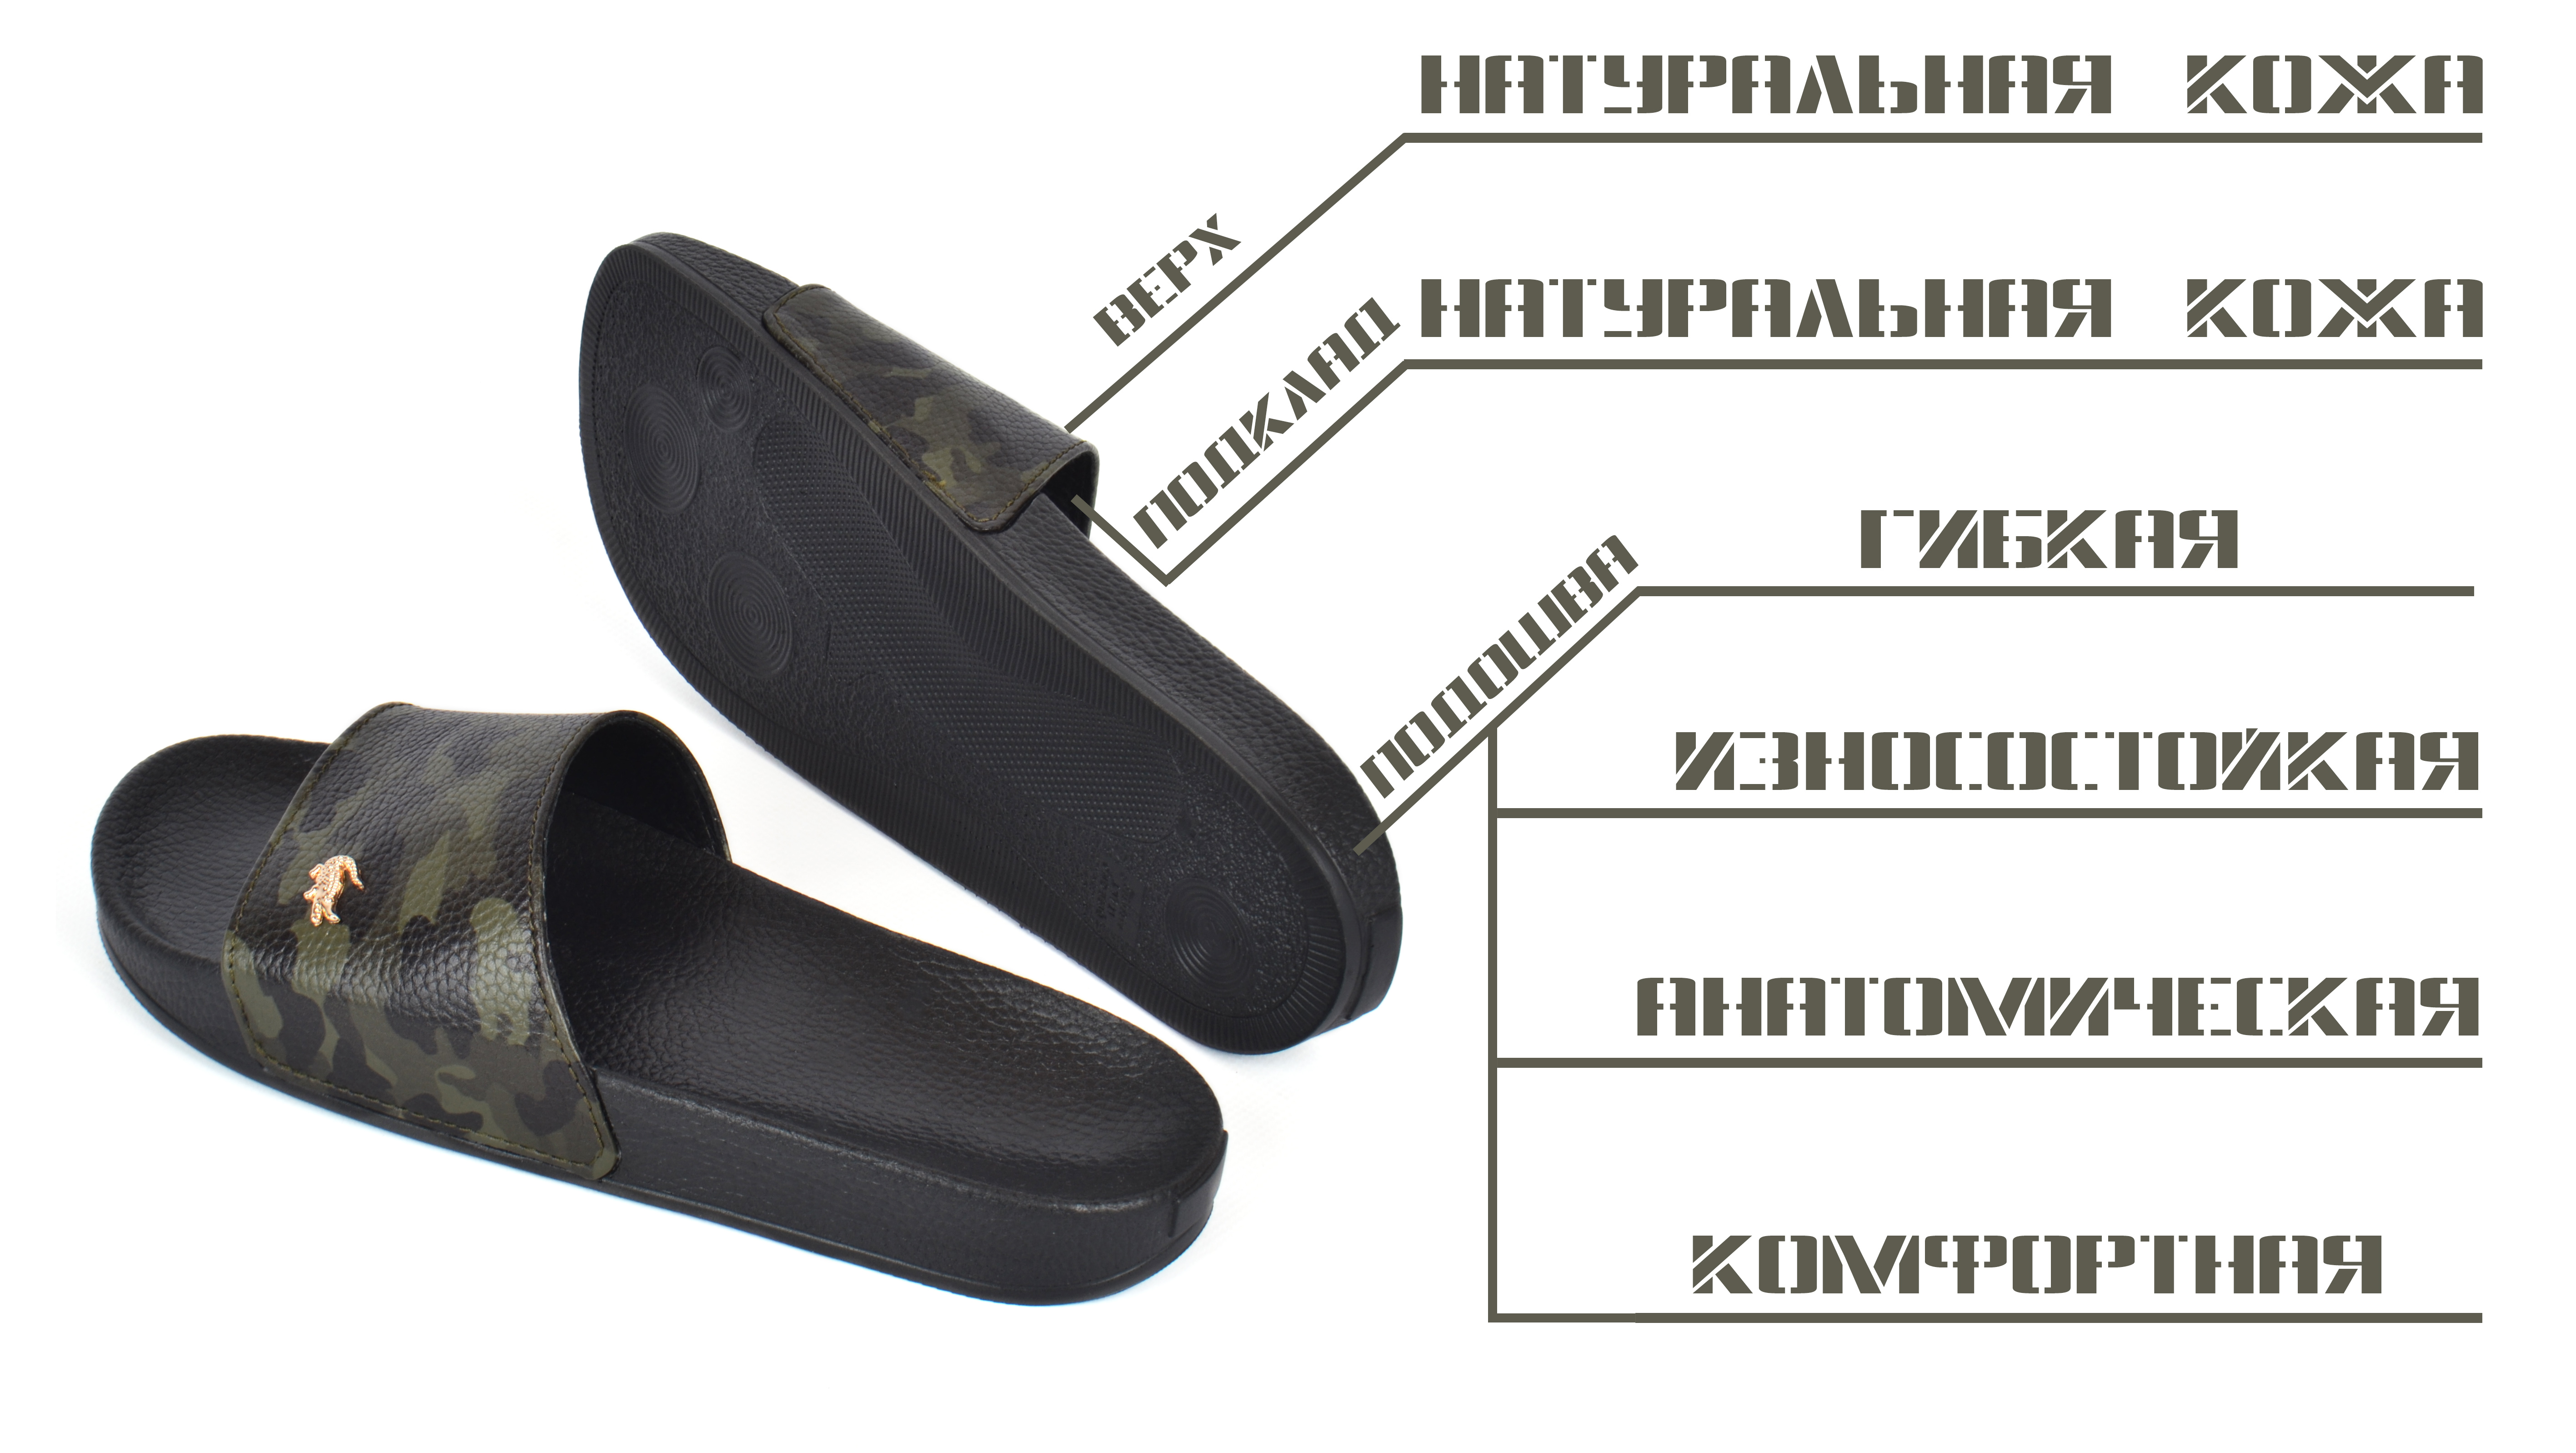 Кожаные мужские летние шлепанцы Lacoste очень удобные шлепки высокого качества по низкой цене купить в Украине